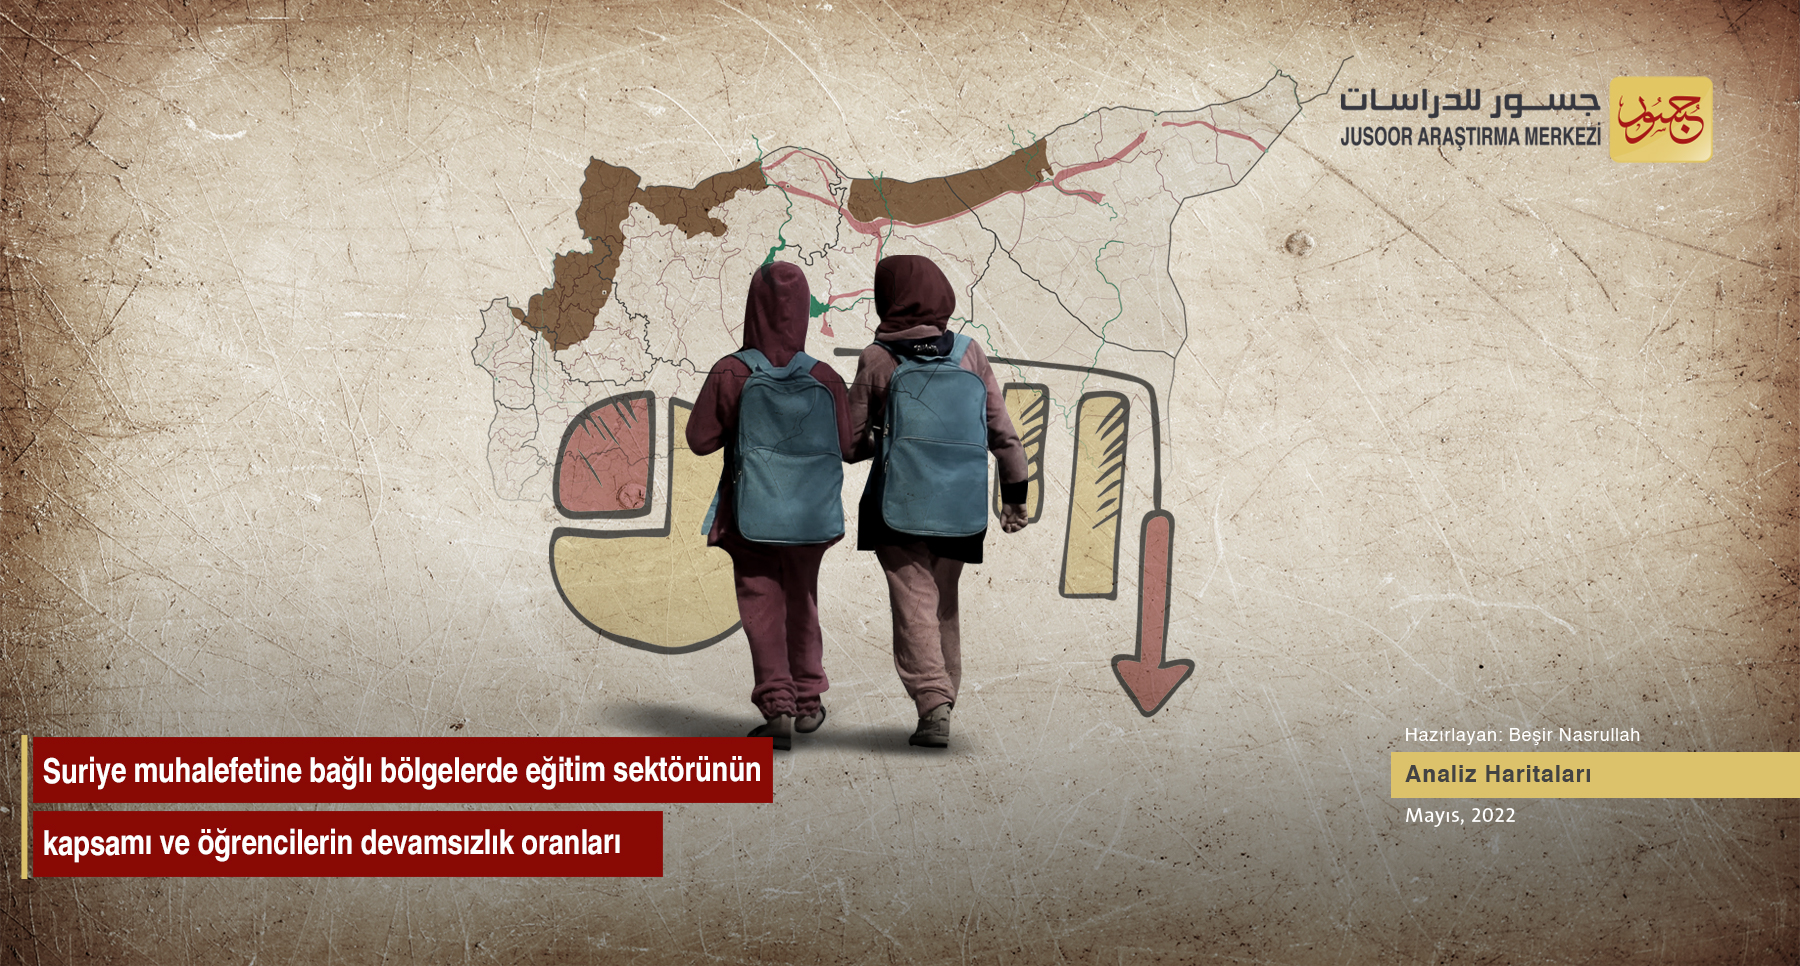 Suriye muhalefetine bağlı bölgelerde eğitim sektörünün kapsamı ve öğrencilerin devamsızlık oranları